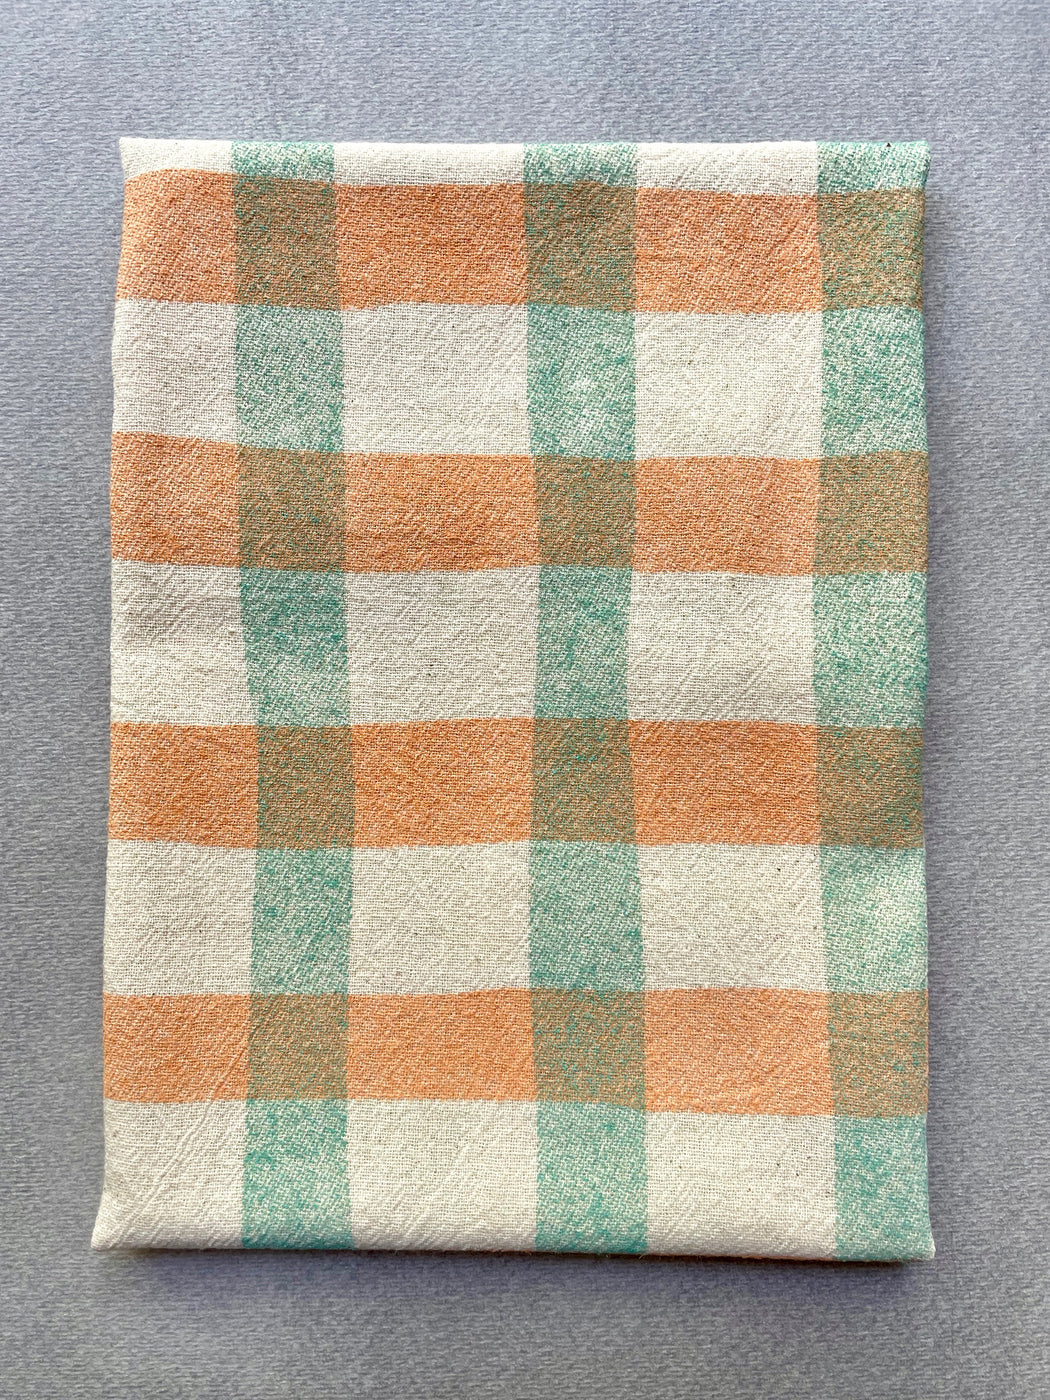 "Picnic" Tea Towel - Terra Cotta and Teal